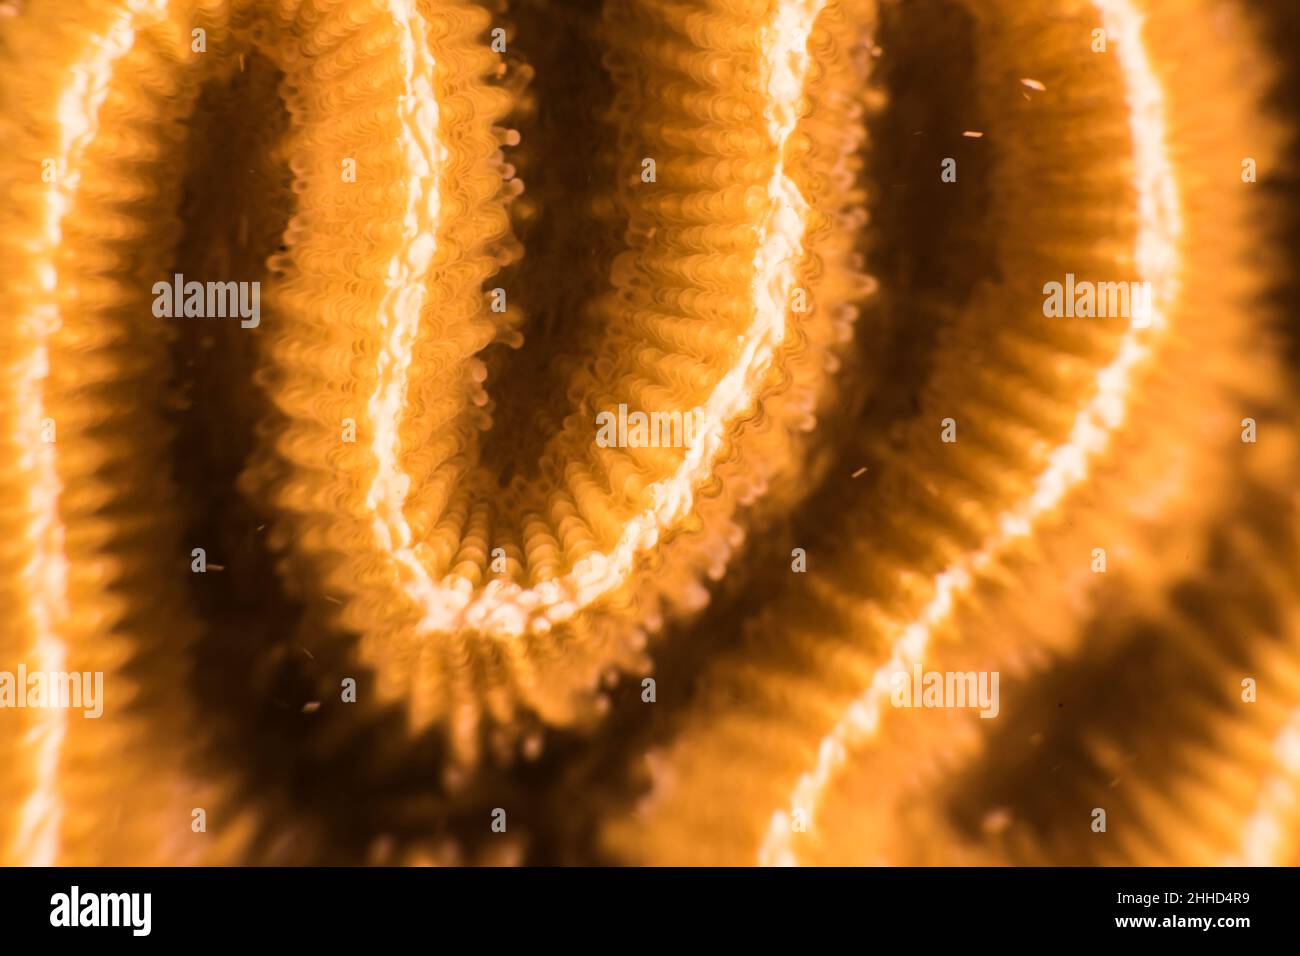 Primo piano, macro della morfologia dei coralli nella barriera corallina del Mar dei Caraibi, Curacao Foto Stock